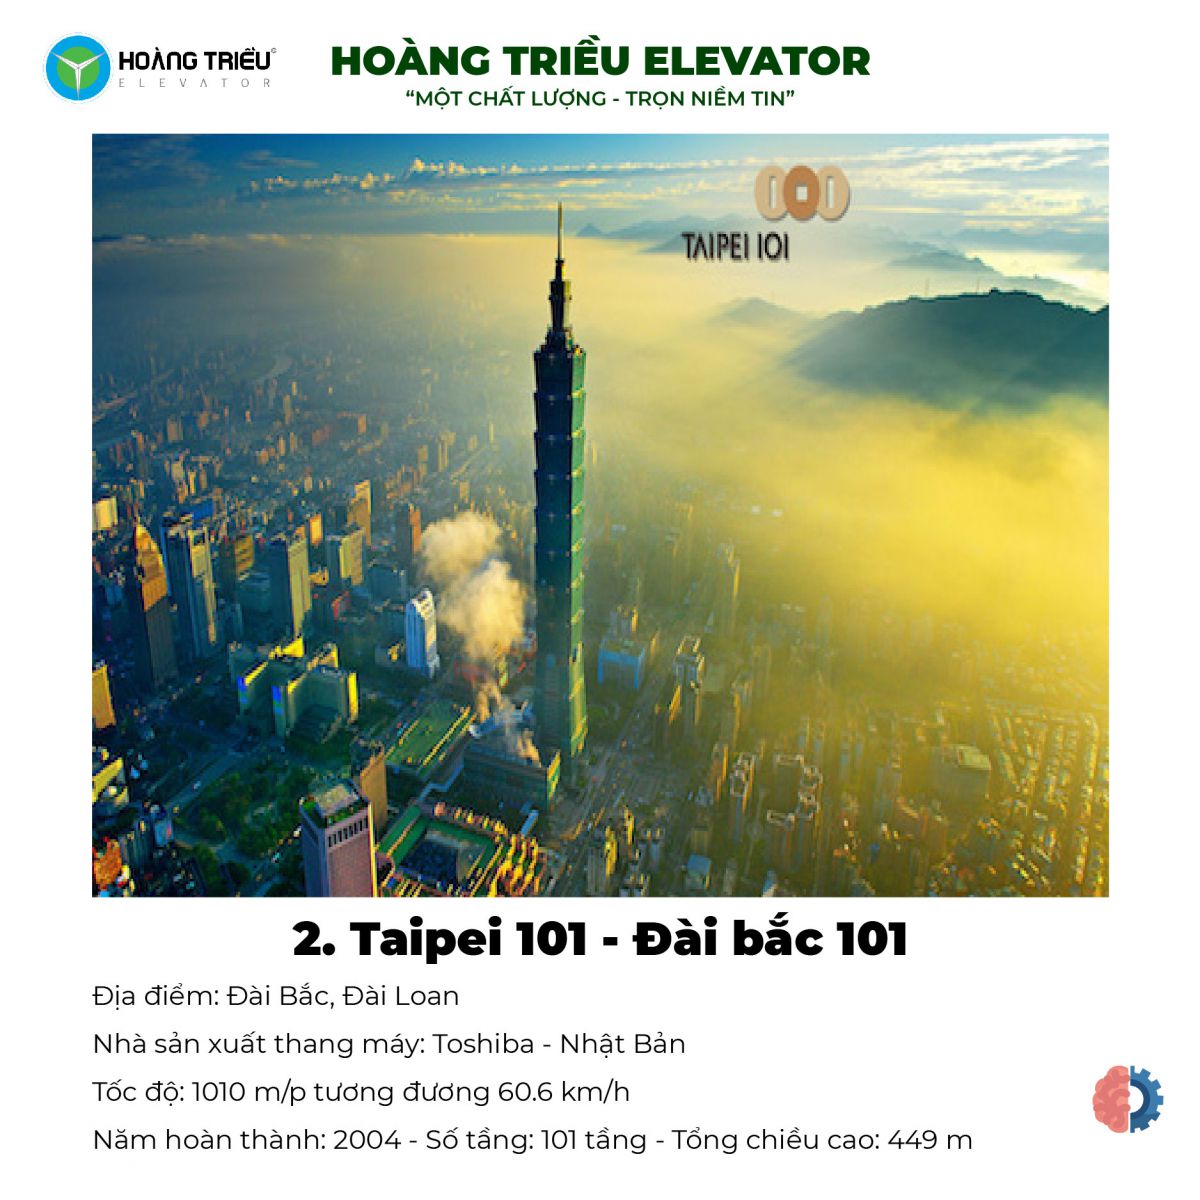 Top 9 tòa nhà có thang máy chạy nhanh nhất Thế Giới